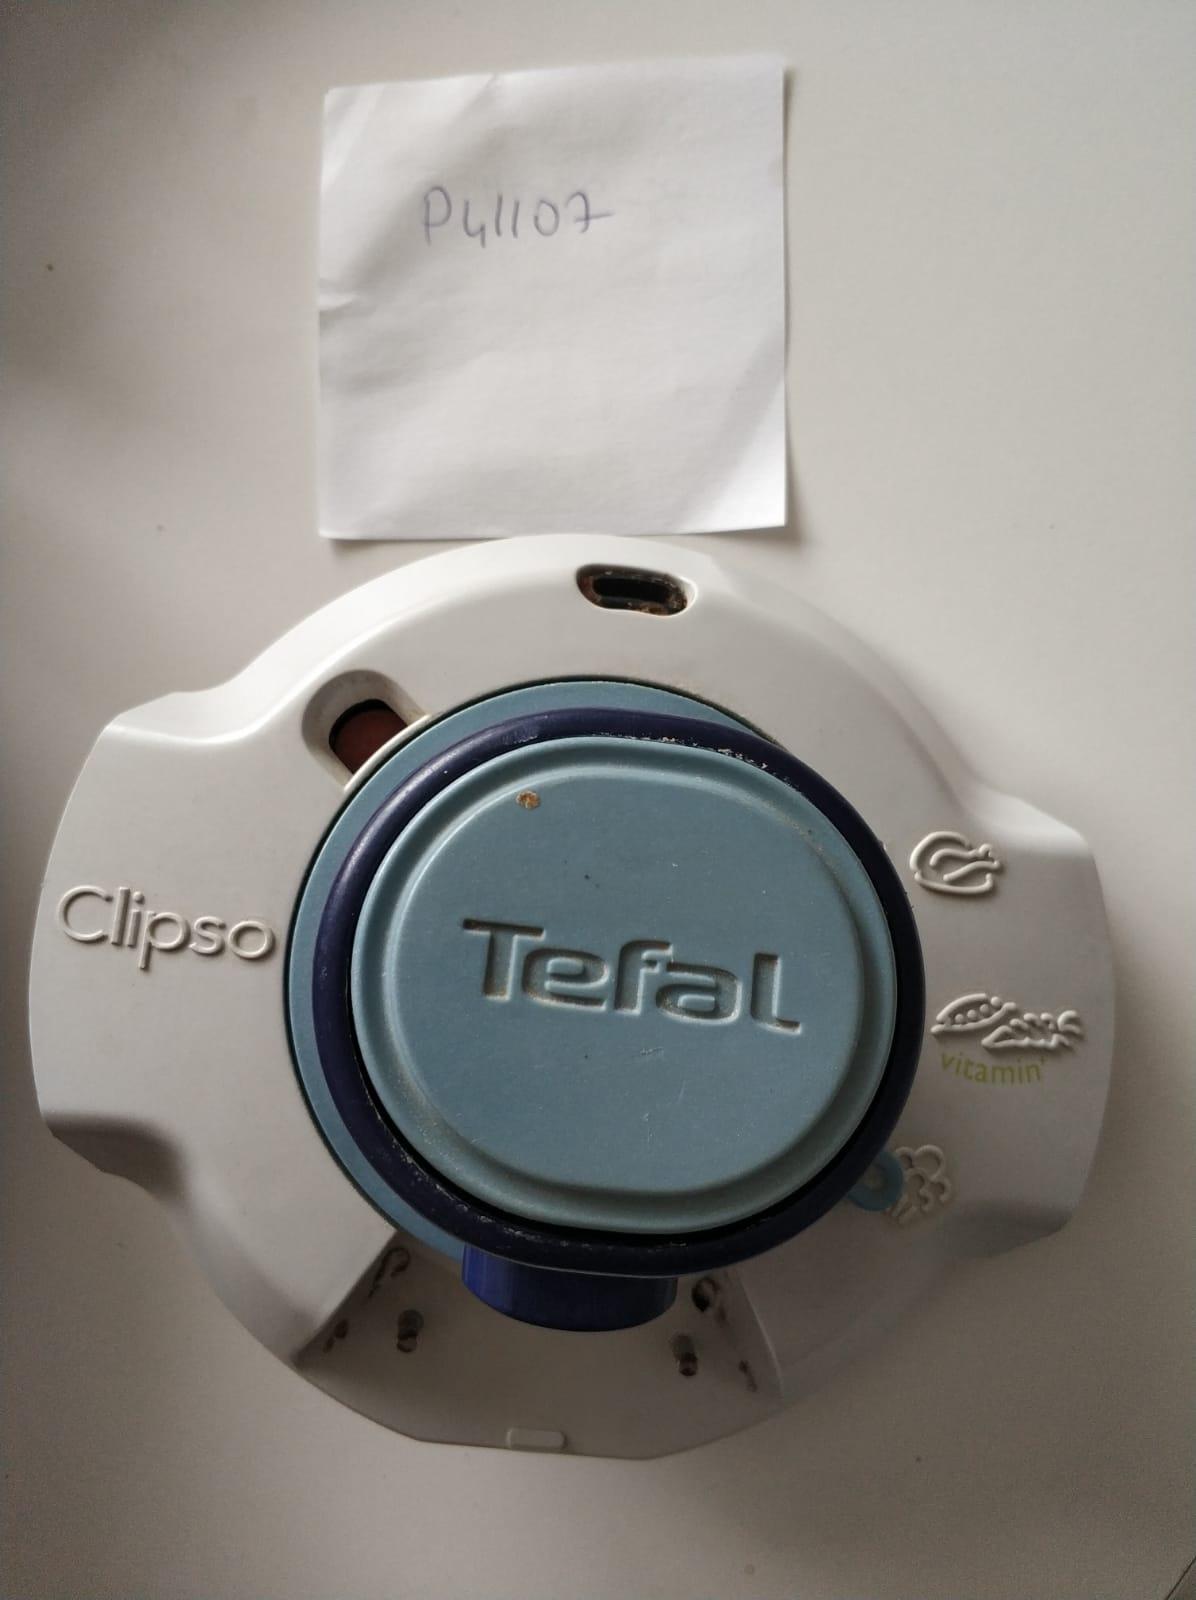 TEFAL Clipso Düdüklü Tencere Lastik 8 Lt 792237 Fiyatı, Yorumları